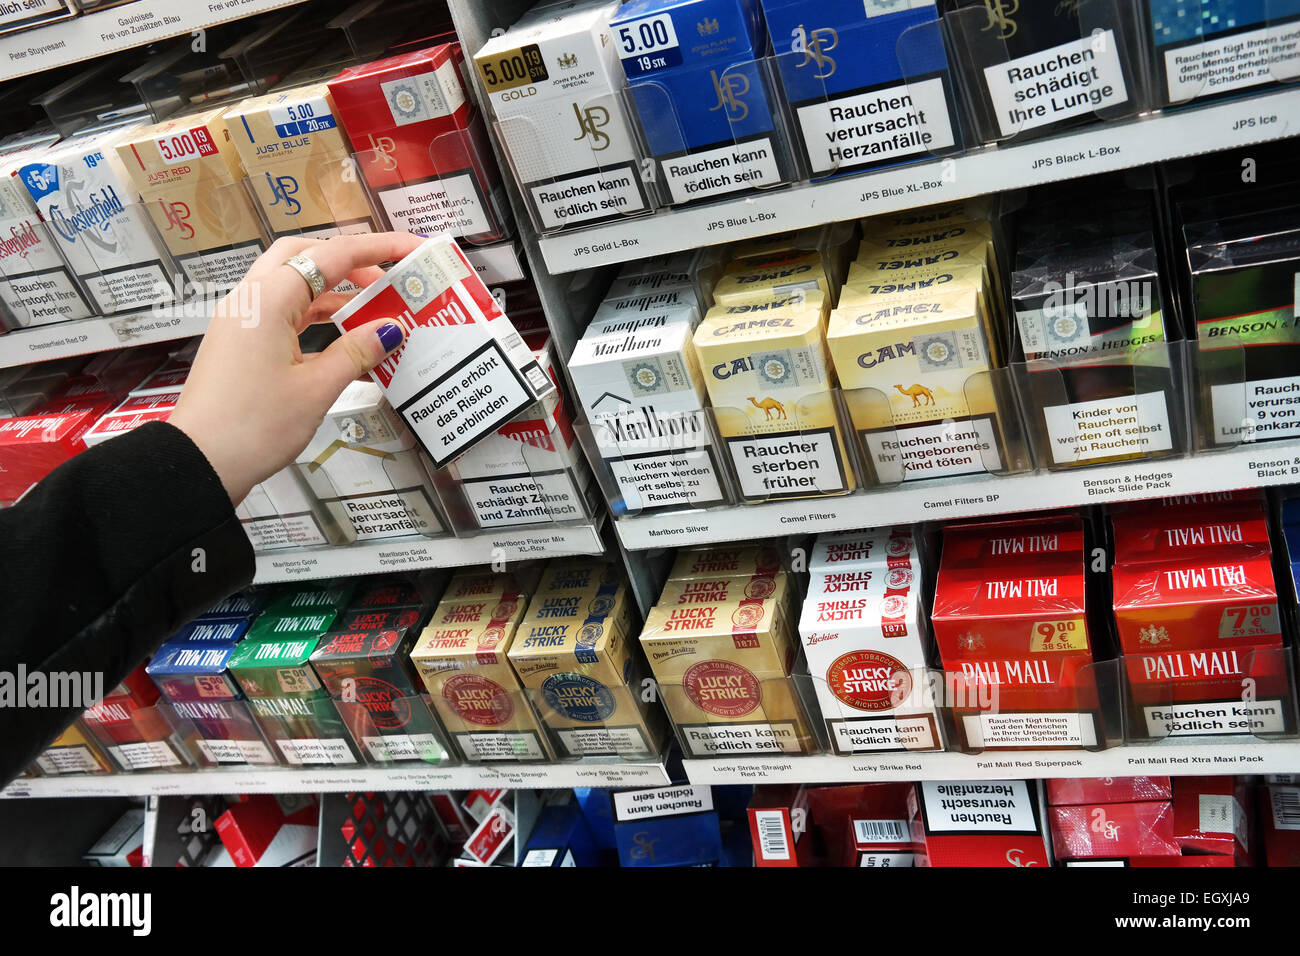 MEPPEN, Germania - Febbraio 2015: pacchetti di sigarette con l'avvertenza: il fumo è letale, in un supermercato Kaufland Foto Stock